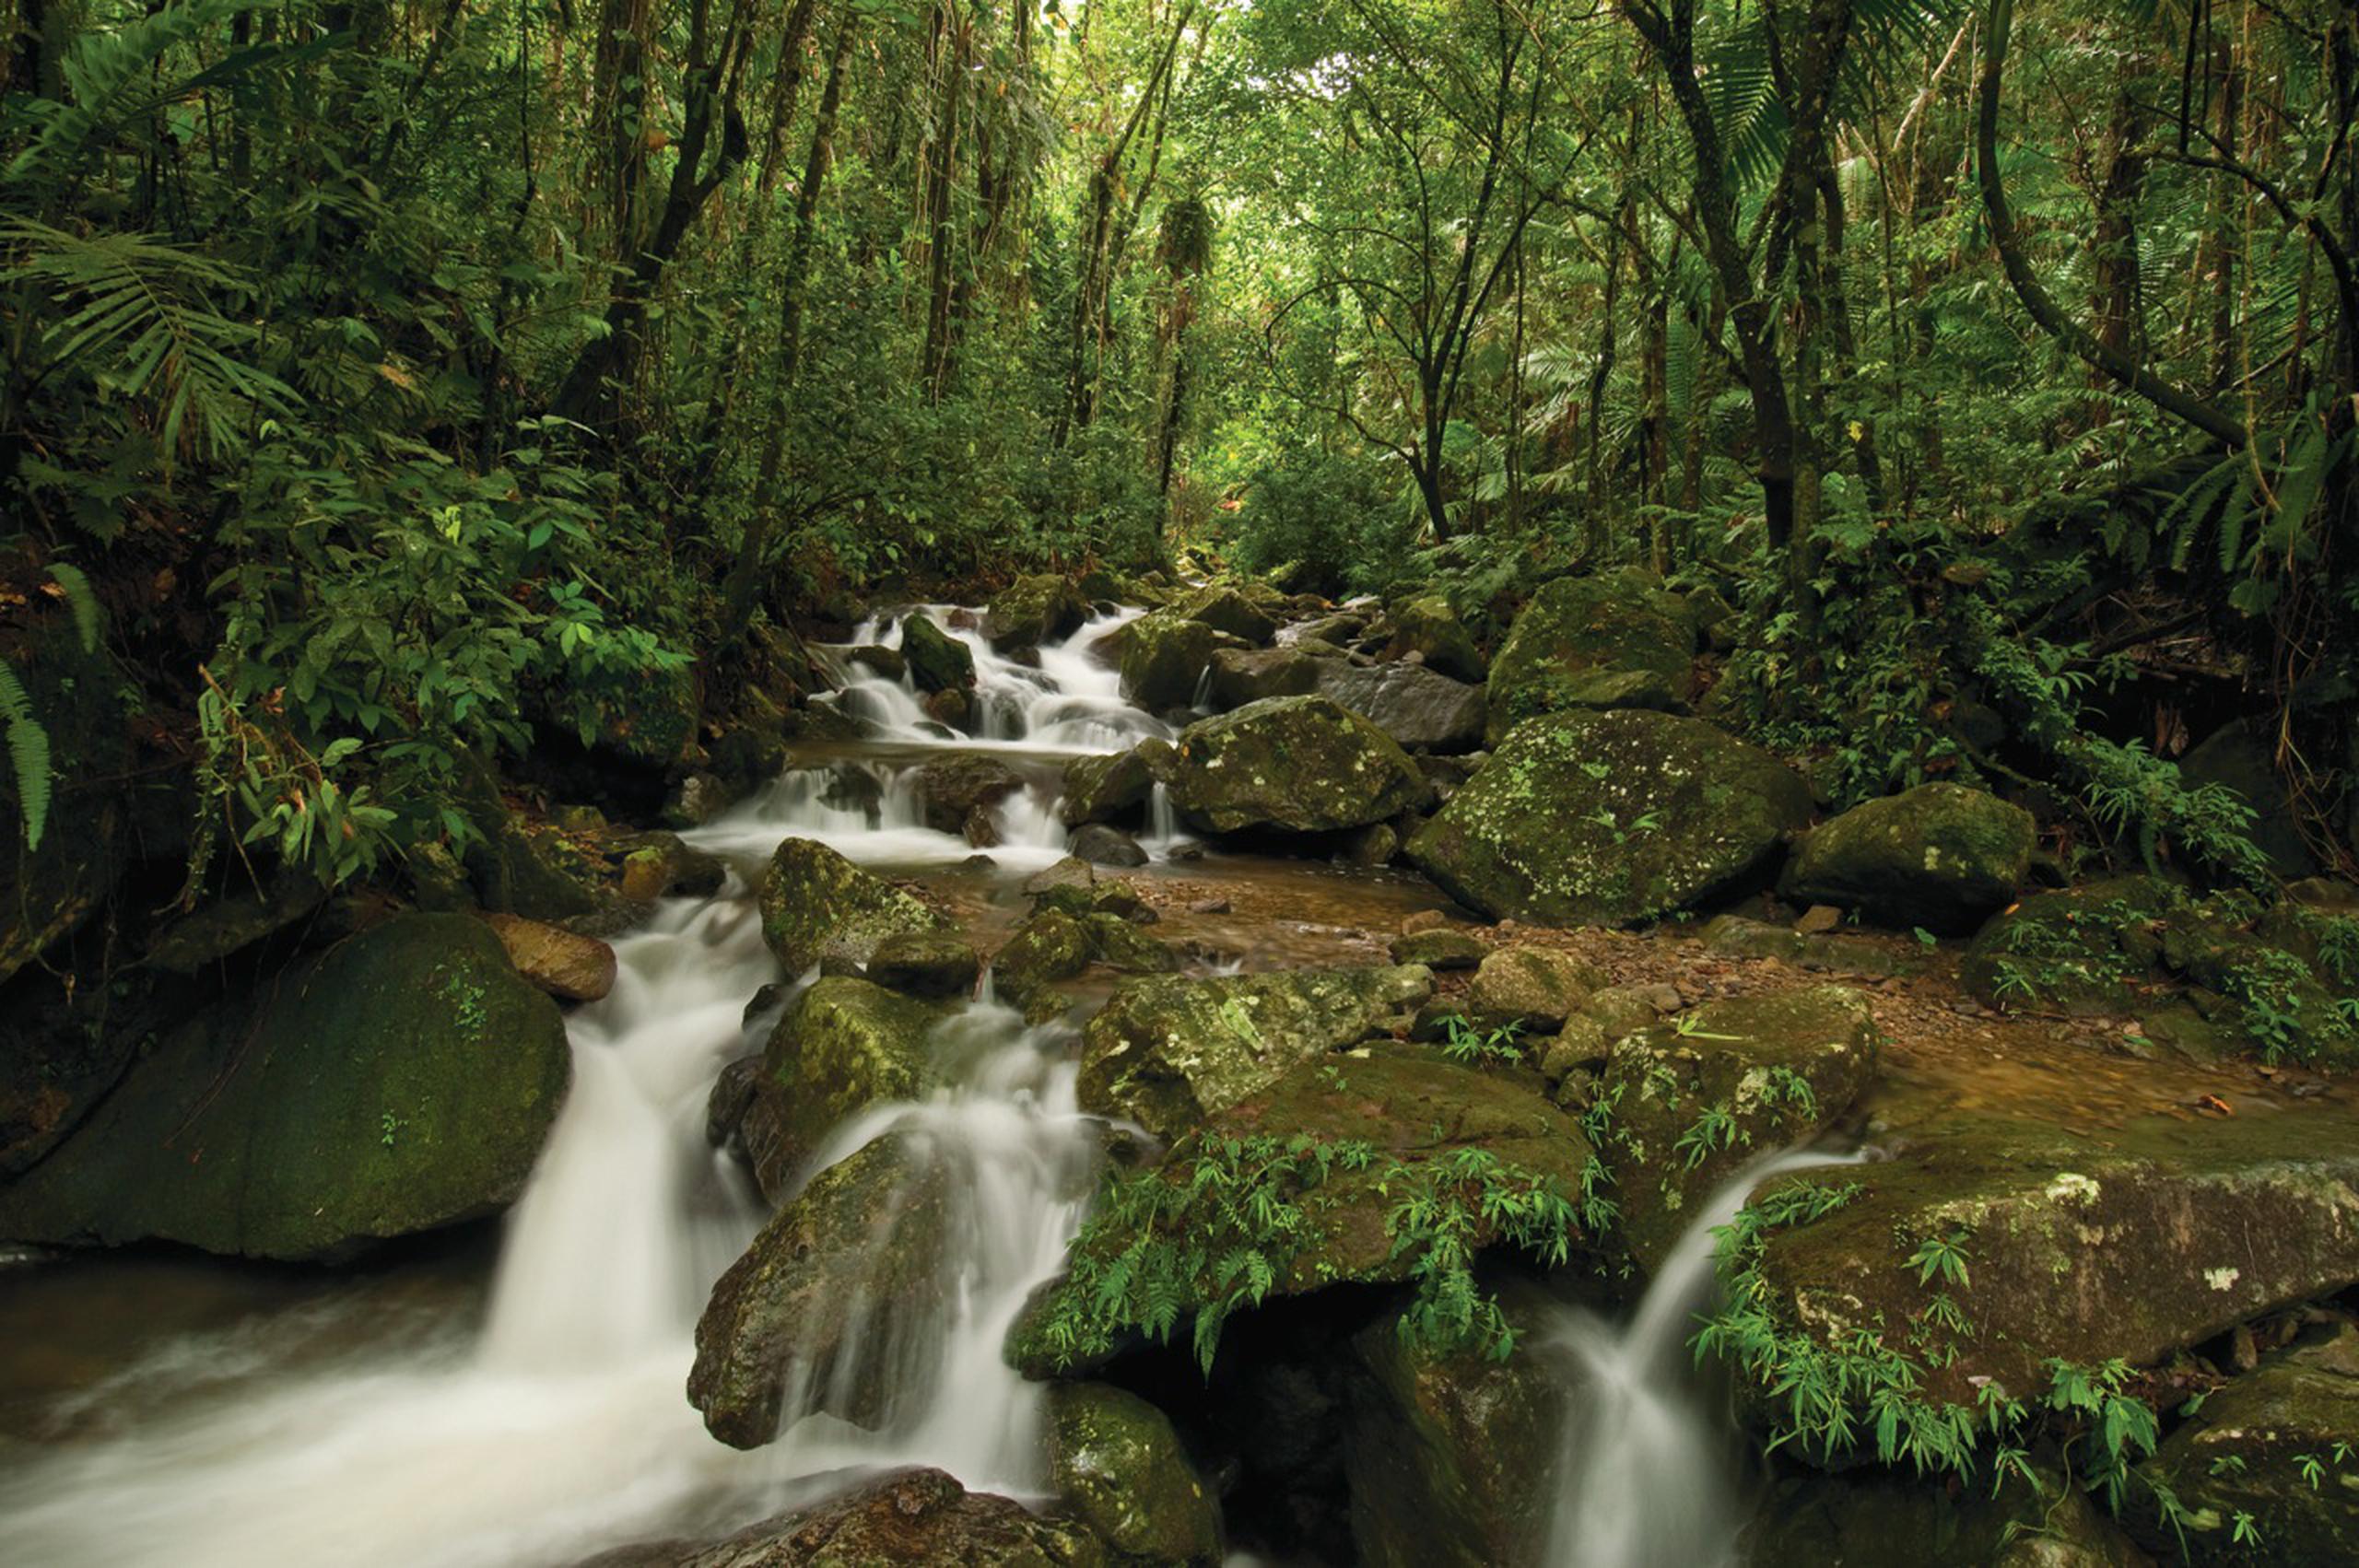 Los seis turistas habían sido reportados como perdidos en el bosque de El Yunque el sábado en la tarde.